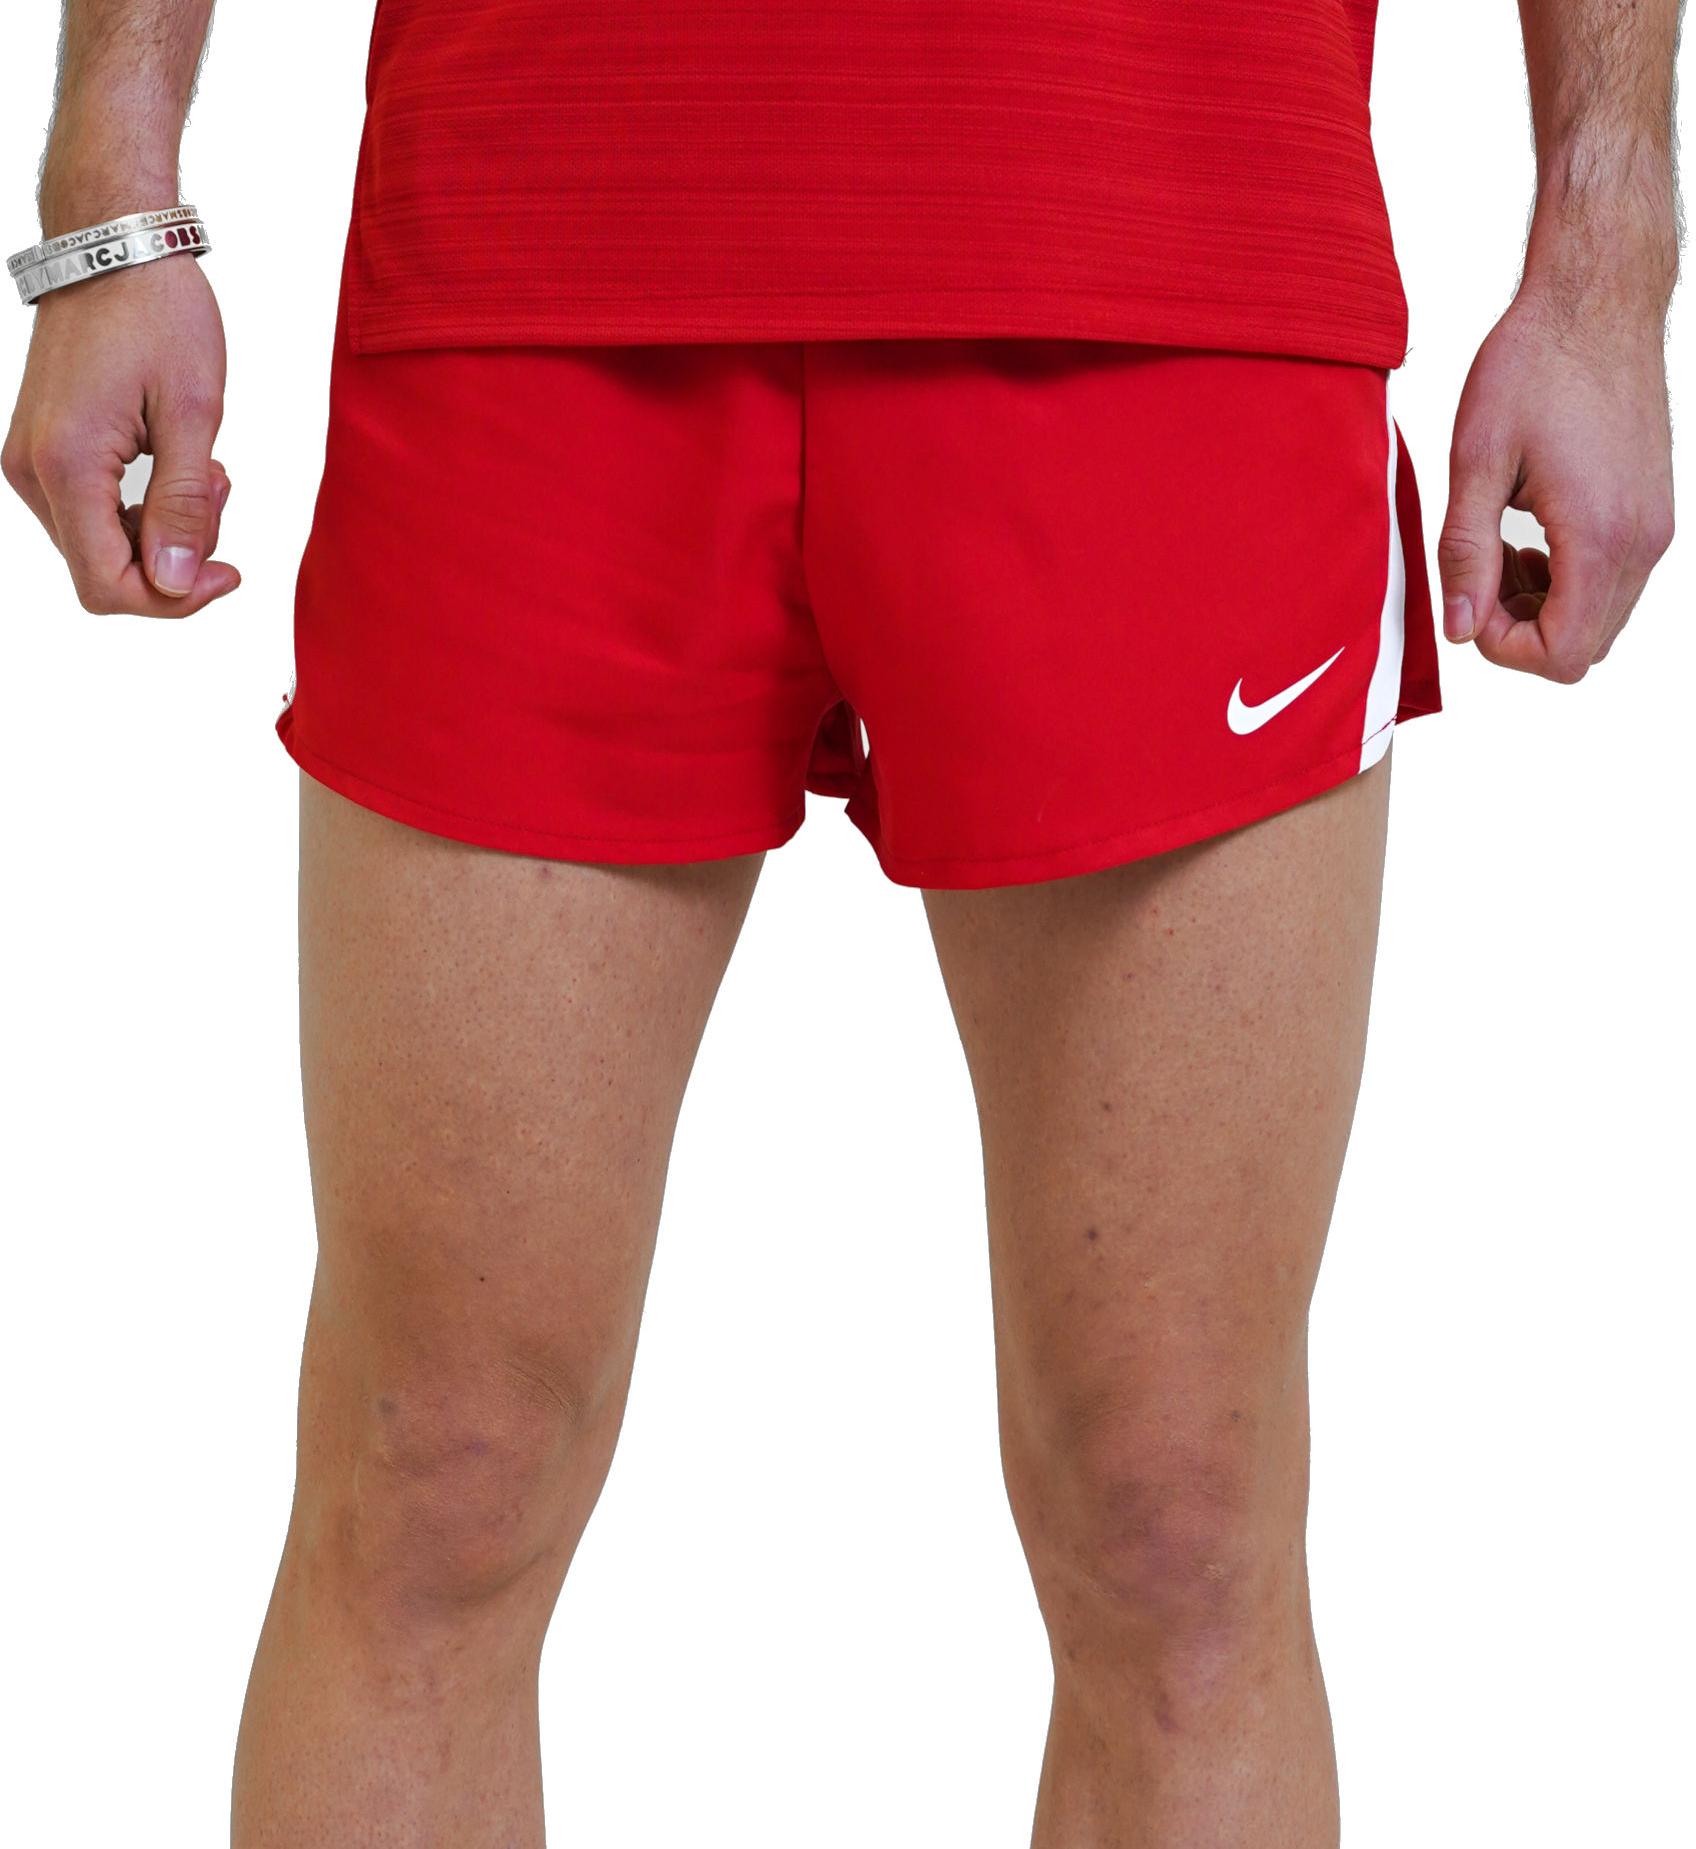 Korte broeken Nike men Stock Fast 2 inch Short